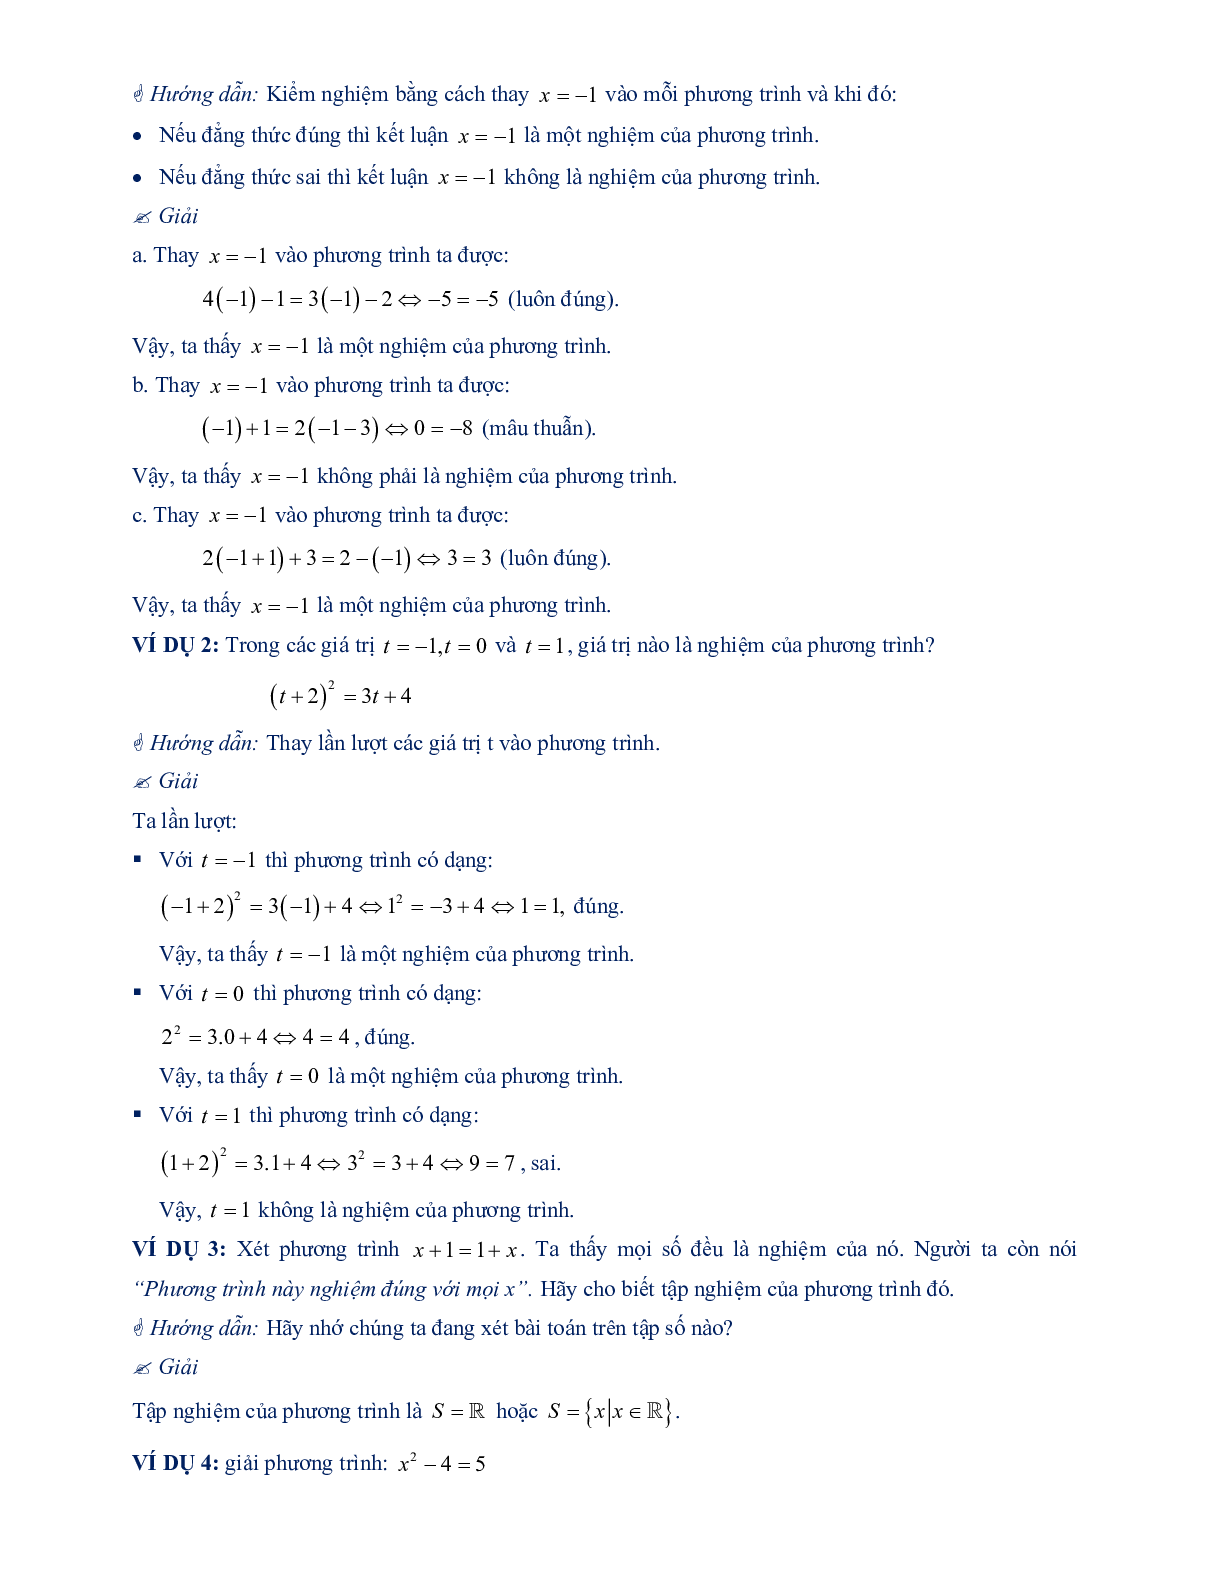 Chuyên đề mở đầu về phương trình (trang 4)